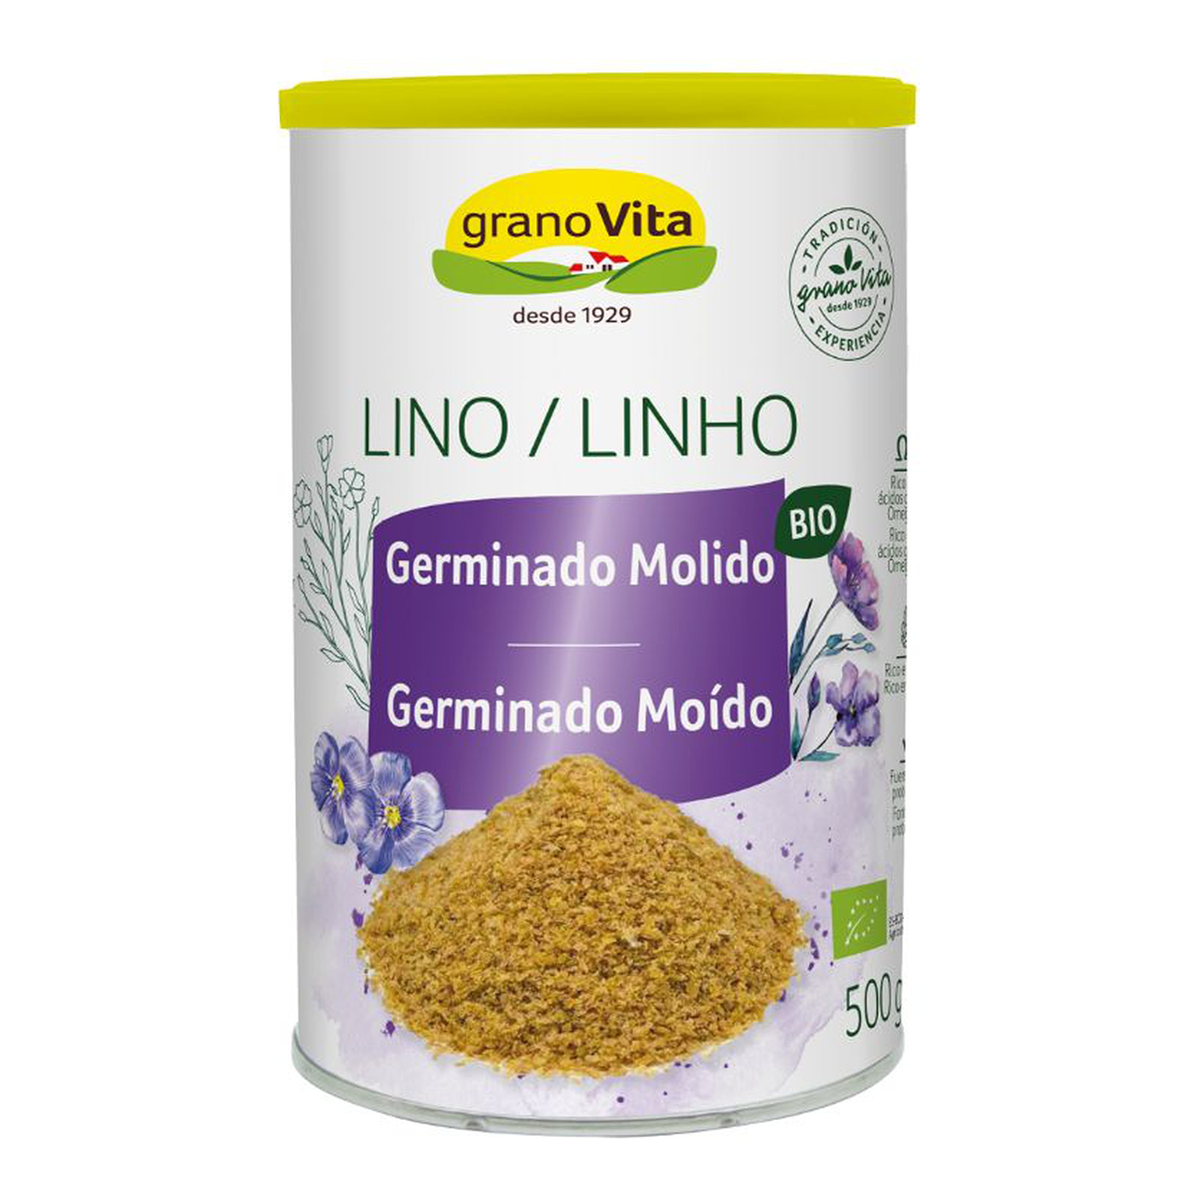 Lino germinado molido bio Granovita 500g. en Biosano